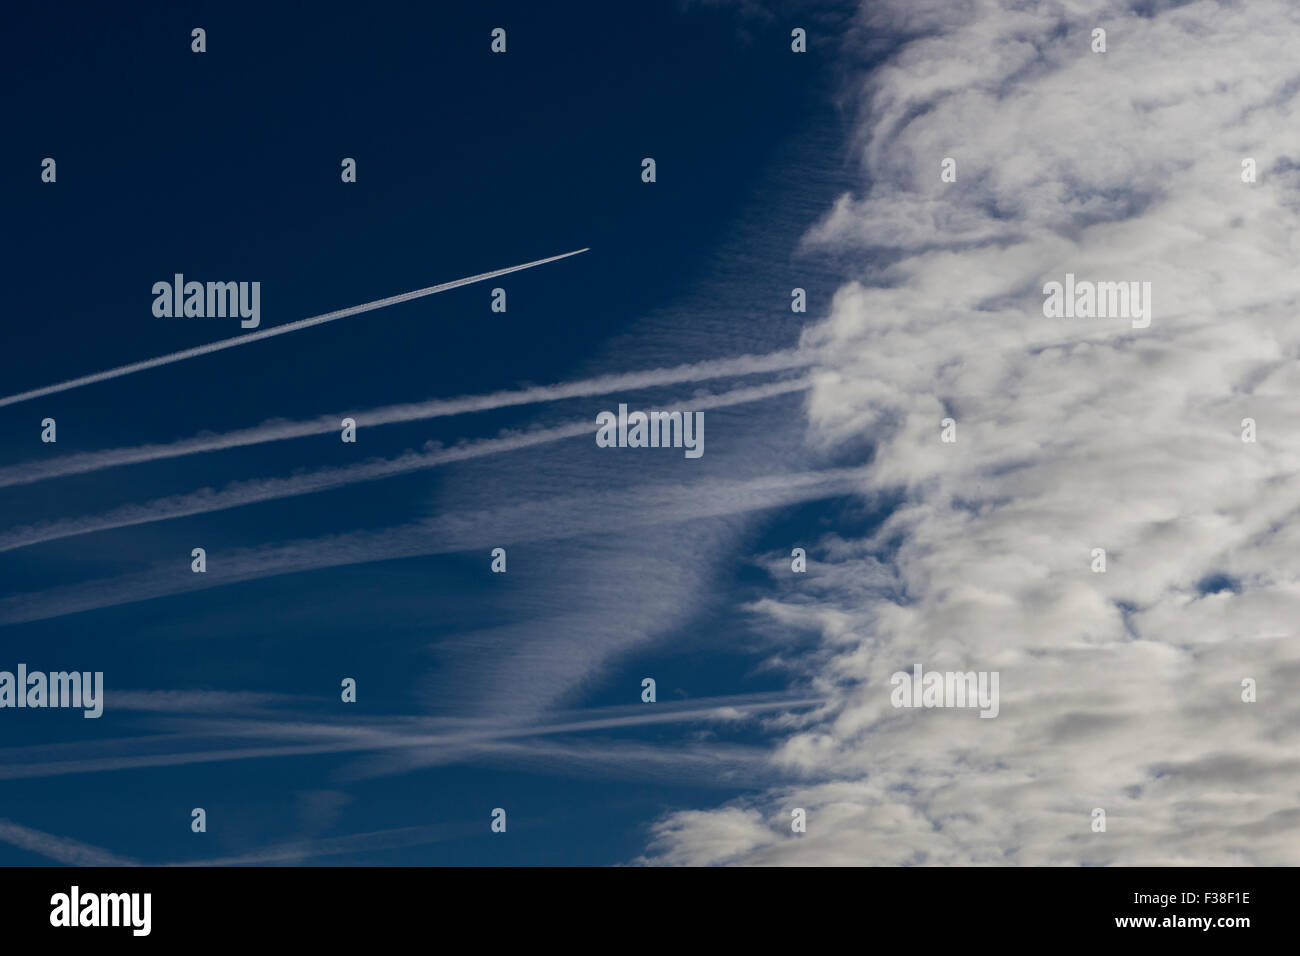 Reste der Flugzeug-Kondensstreifen in klaren, blauen Himmel mit einem Jet Flugzeug in Richtung Wolken lassen Dampf Prozess dahinter. Stockfoto